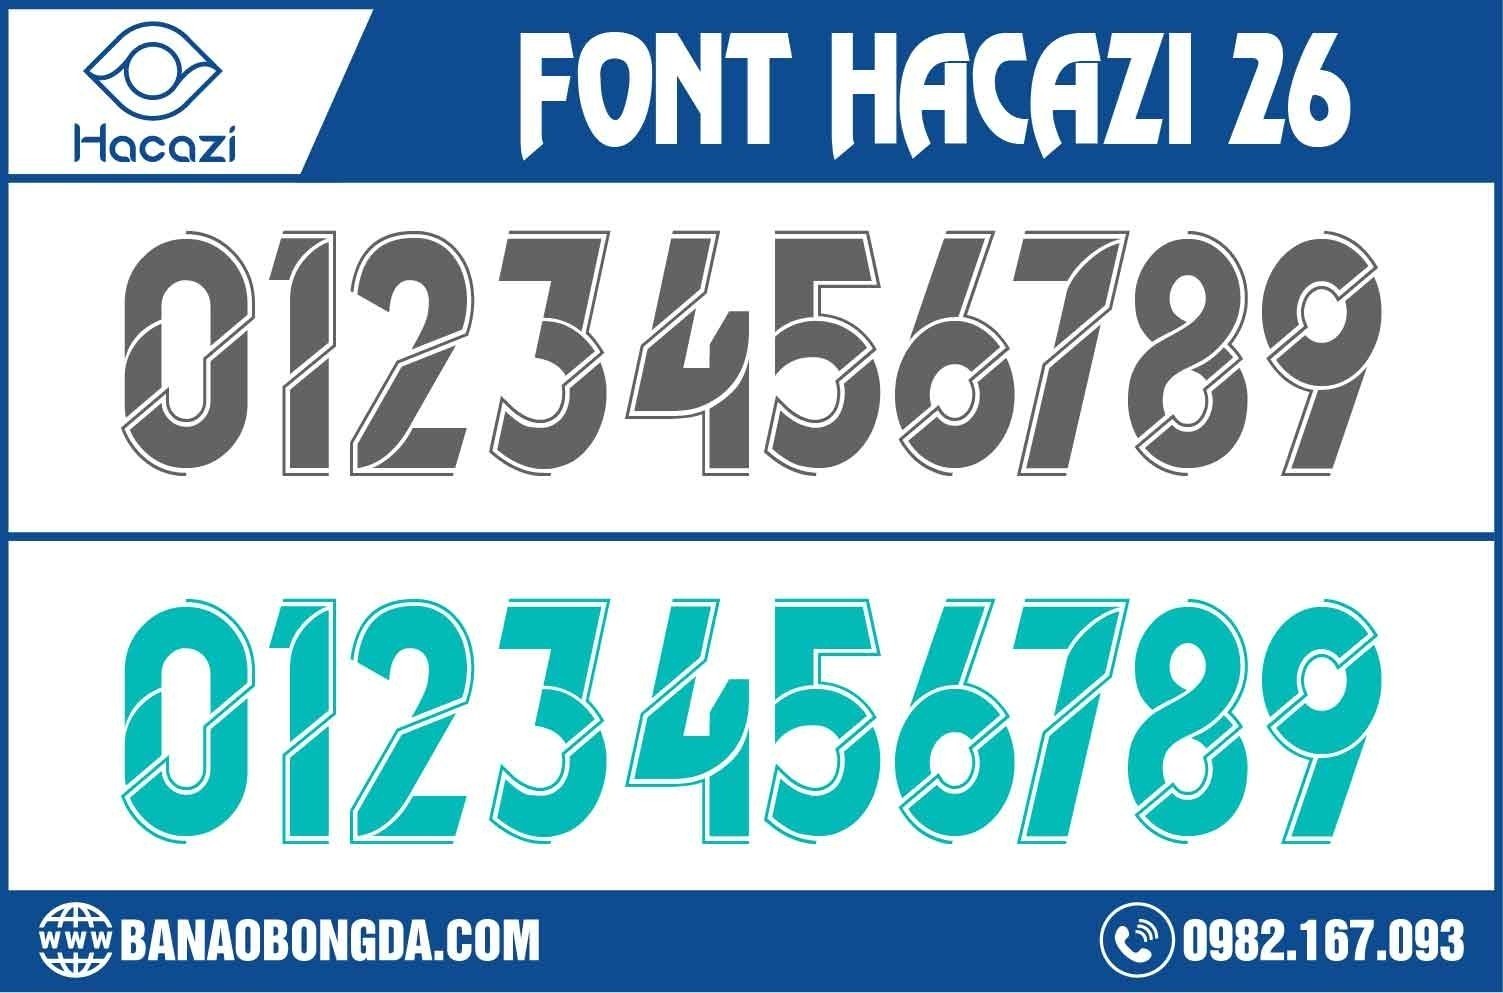  Bạn đã sẵn sàng cùng với shop Hacazi Sport để chiêm ngưỡng mẫu font số áo bóng đá 26 được thiết kế vô cùng phong cách này chưa? Không chỉ sở hữu màu sắc thời thường, mà cách nhấn nhá trên số áo cũng khiến nó trở nên đặc biệt nhất. 